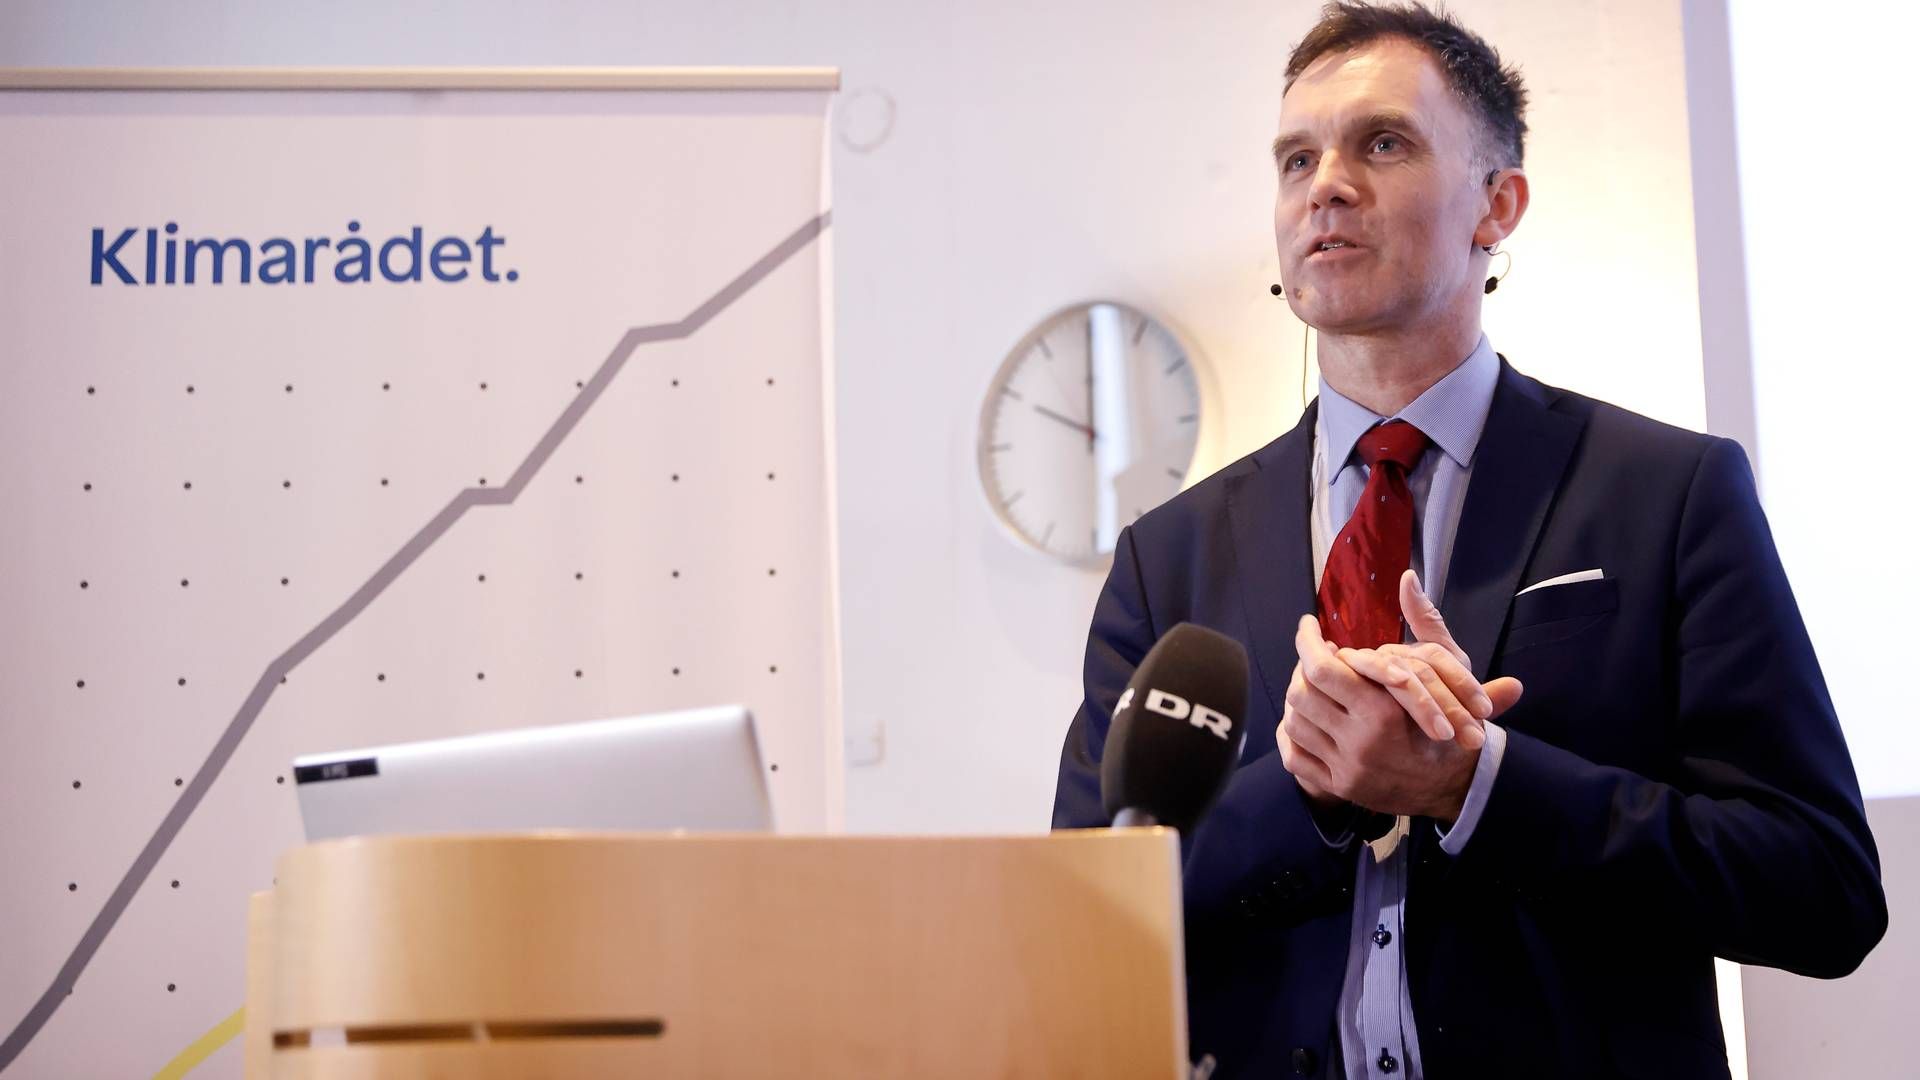 Peter Møllgaard, Klimarådets formand samt professor og dekan ved Syddansk Universitet, da han præsenterer en af de tidligere klimarapporter. | Foto: Jens Dresling